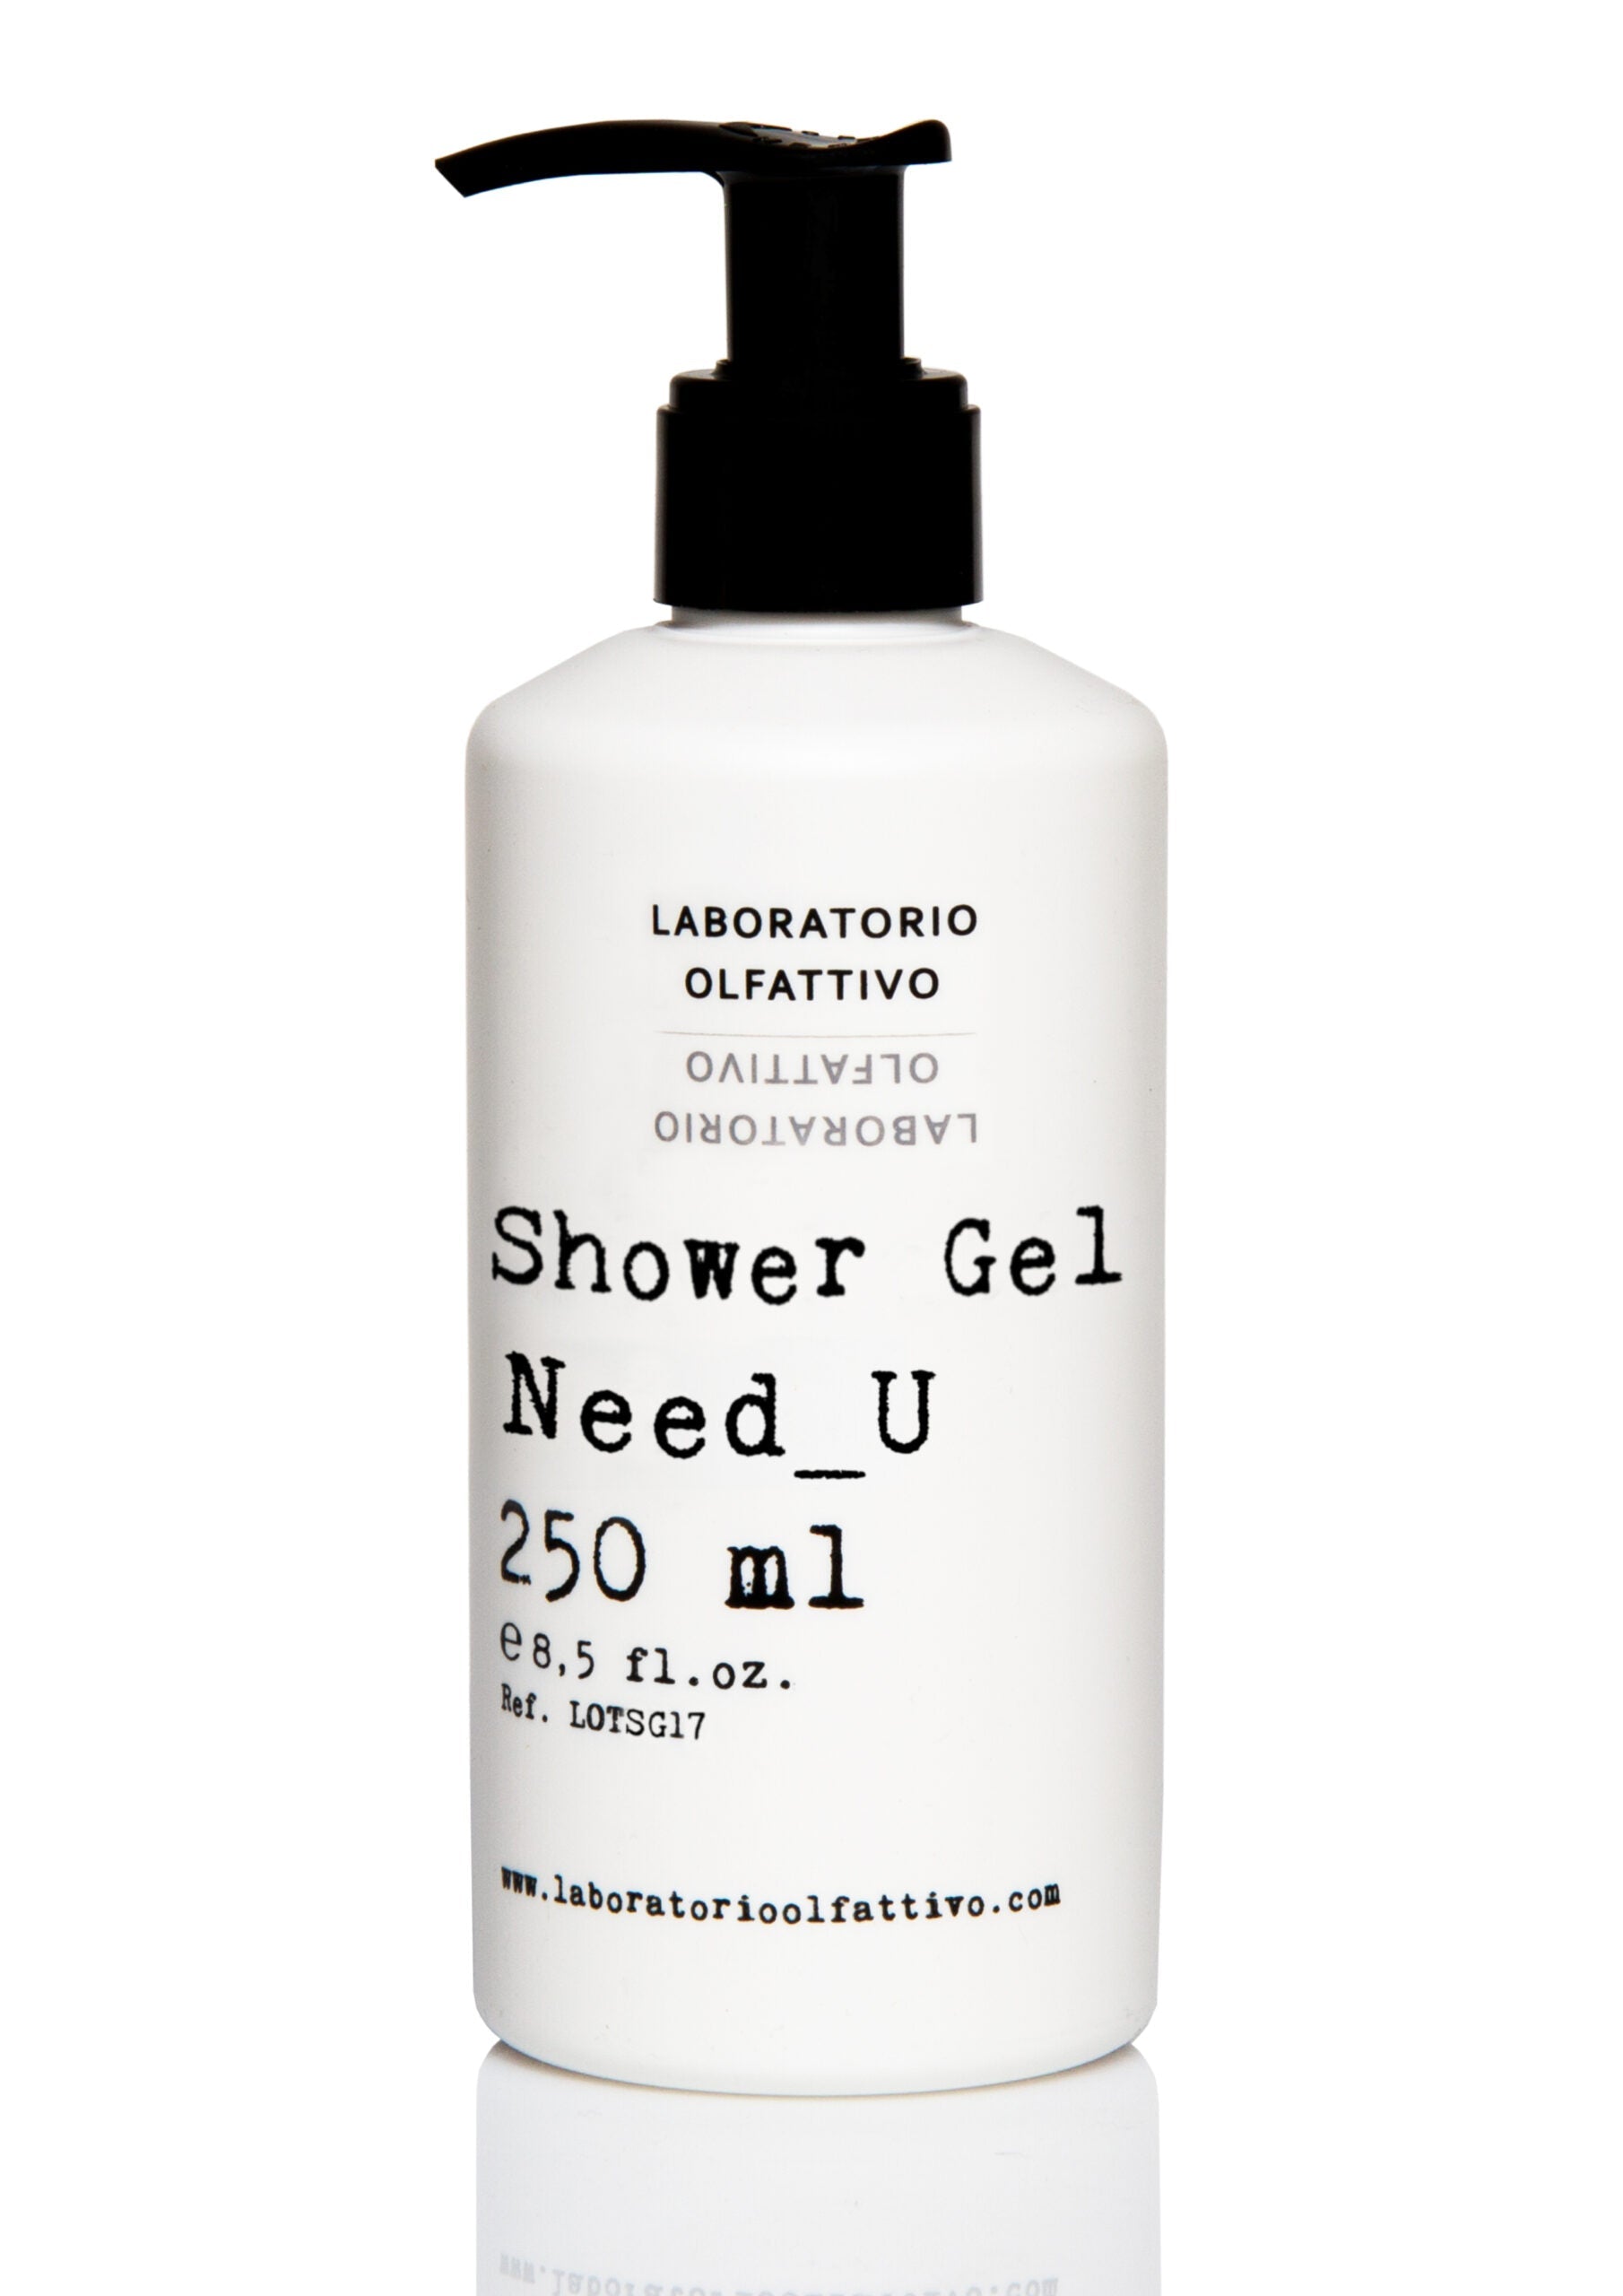 Laboratorio Olfattivo Need_U Shower Gel